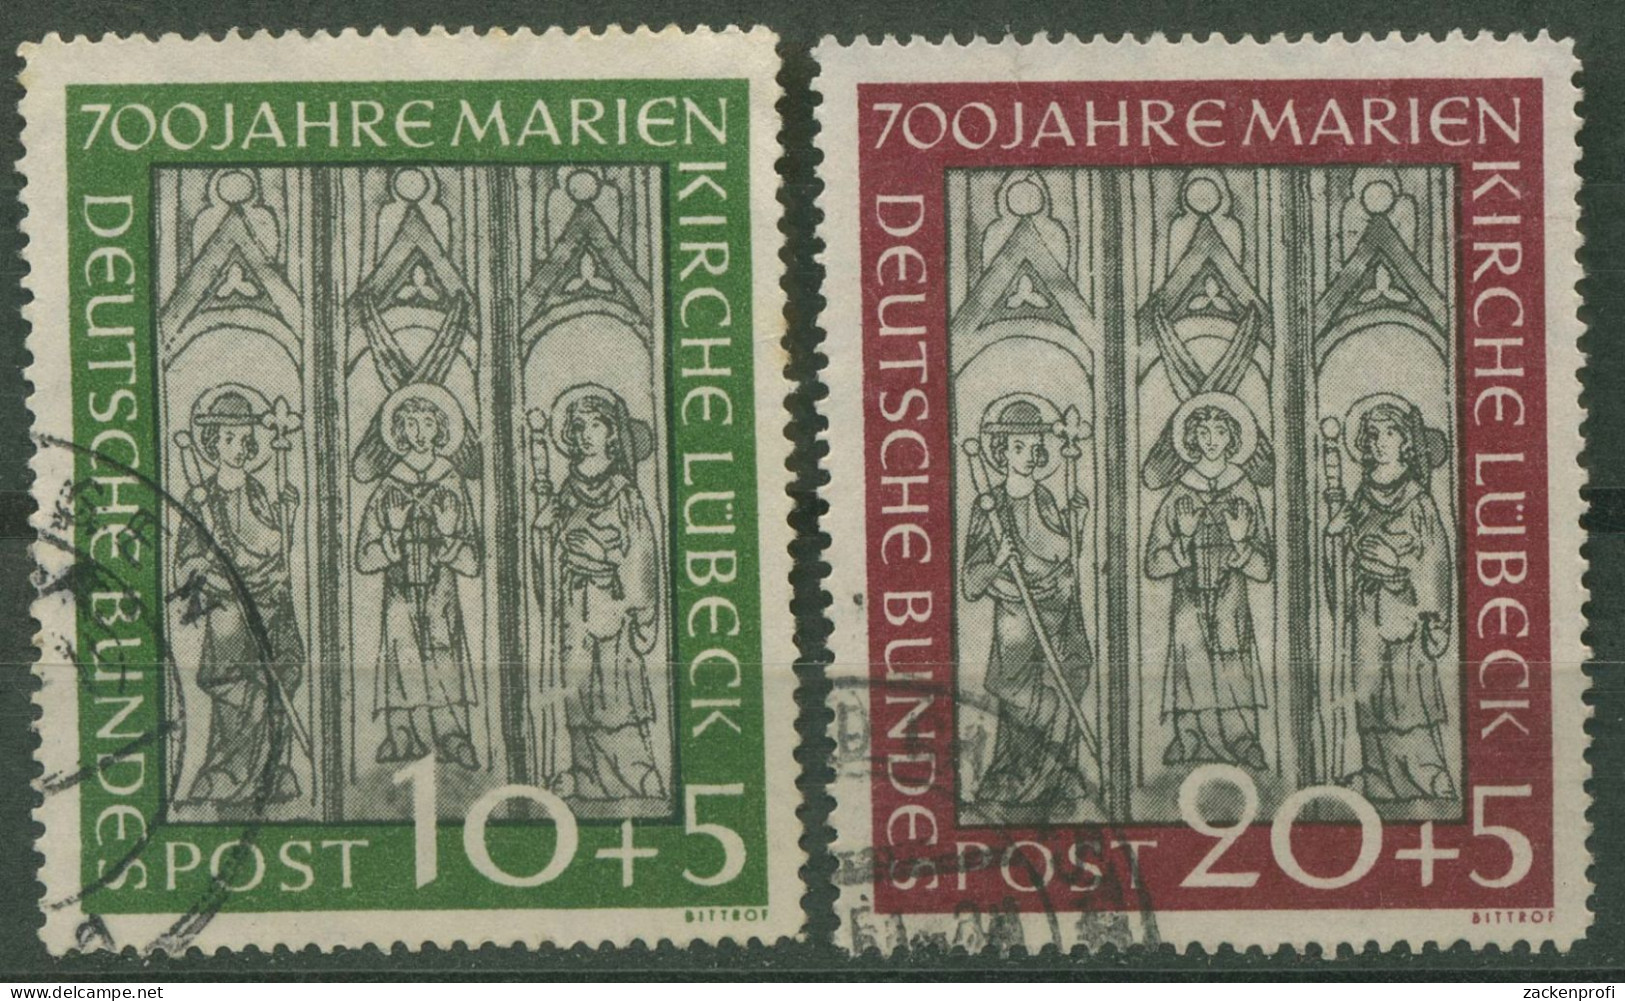 Bund 1951 700 Jahre Marienkirche Lübeck 139/40 Gestempelt (R81067) - Usati